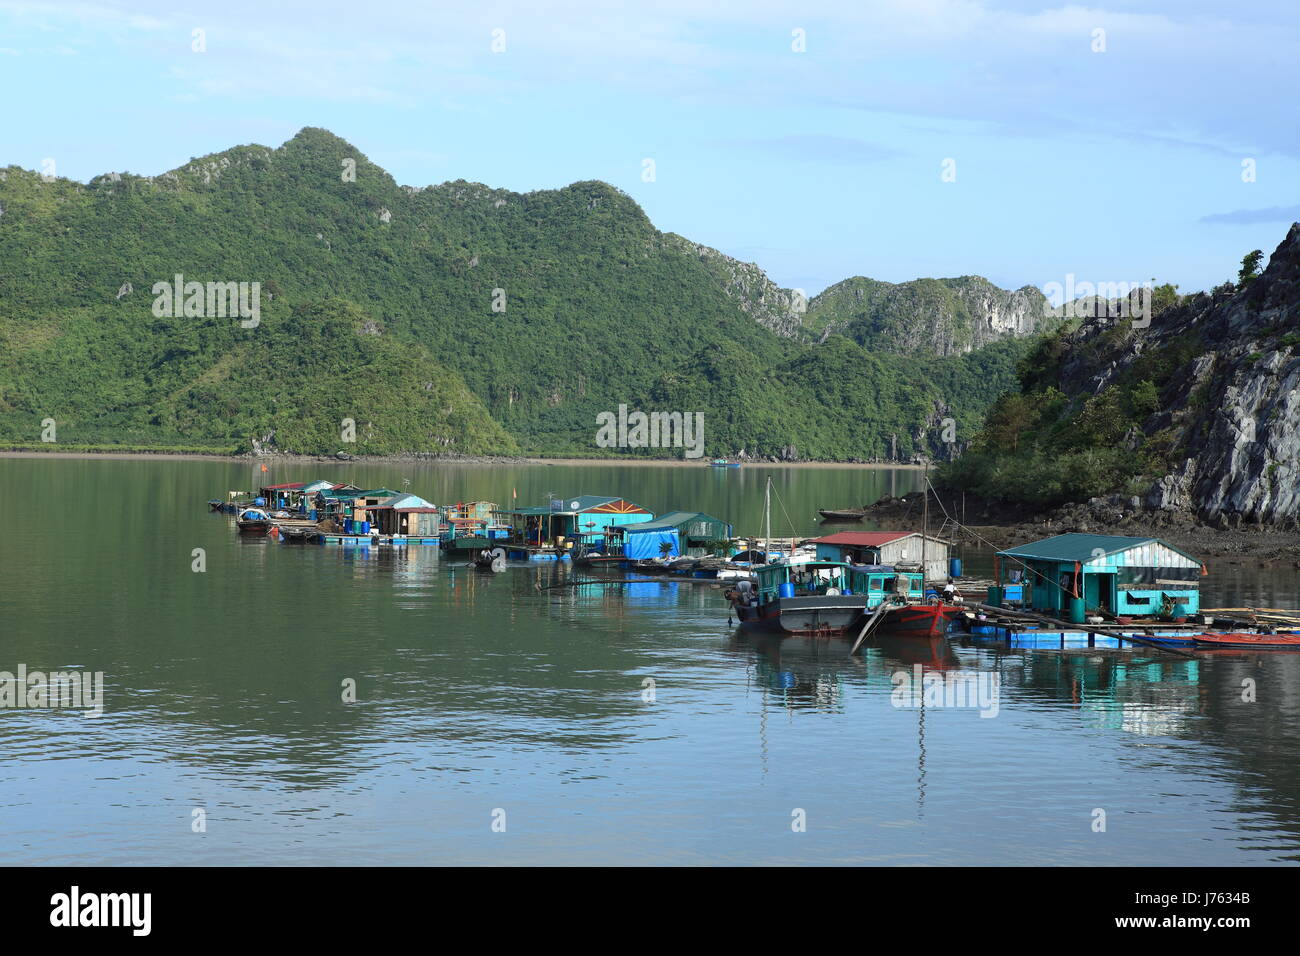 Asia Viet Nam Vietnam Fischer fischen Dorf Gemeinde Dorf Marktstadt Stockfoto